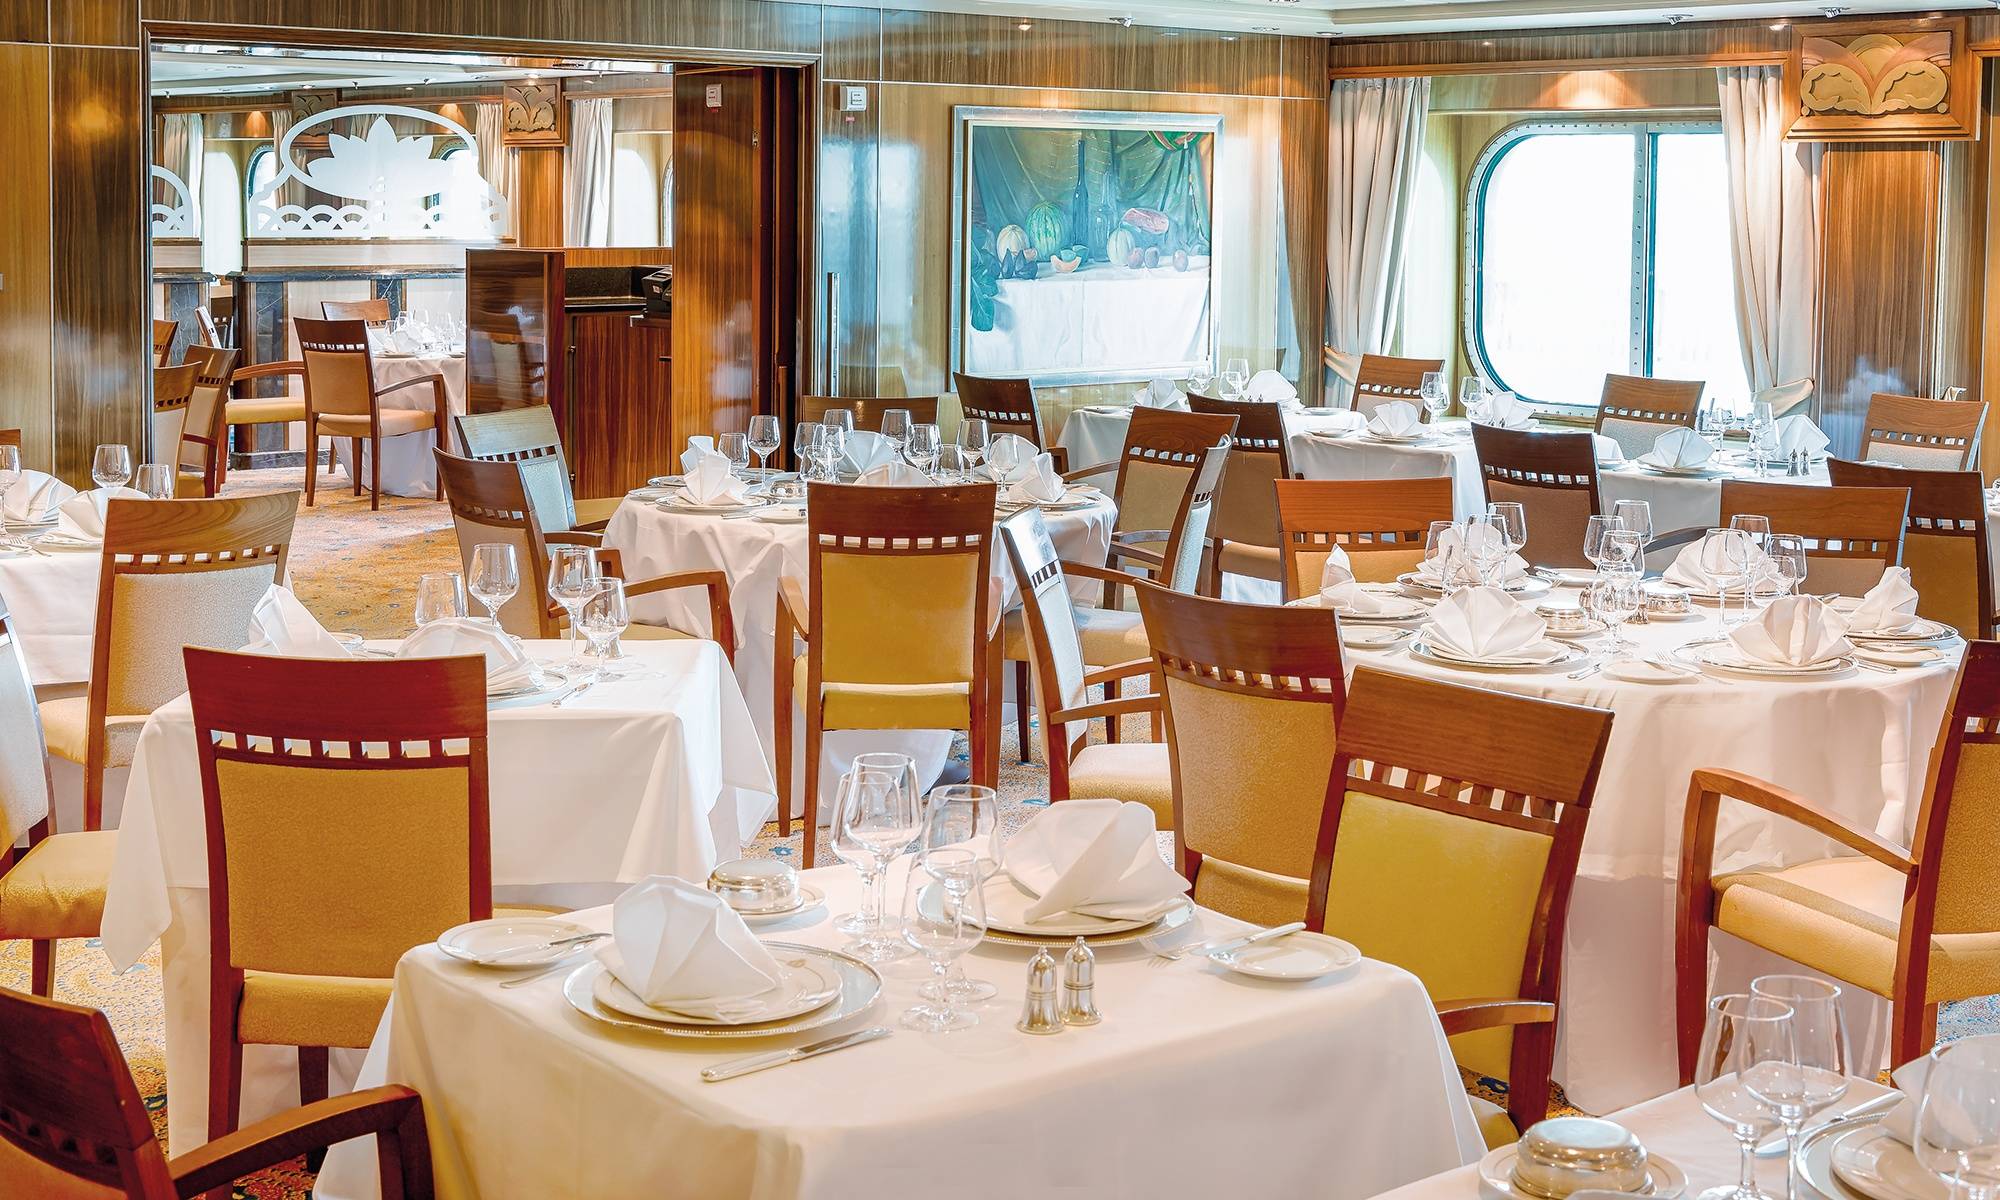 Queen Mary 2 Britannia Restaurant